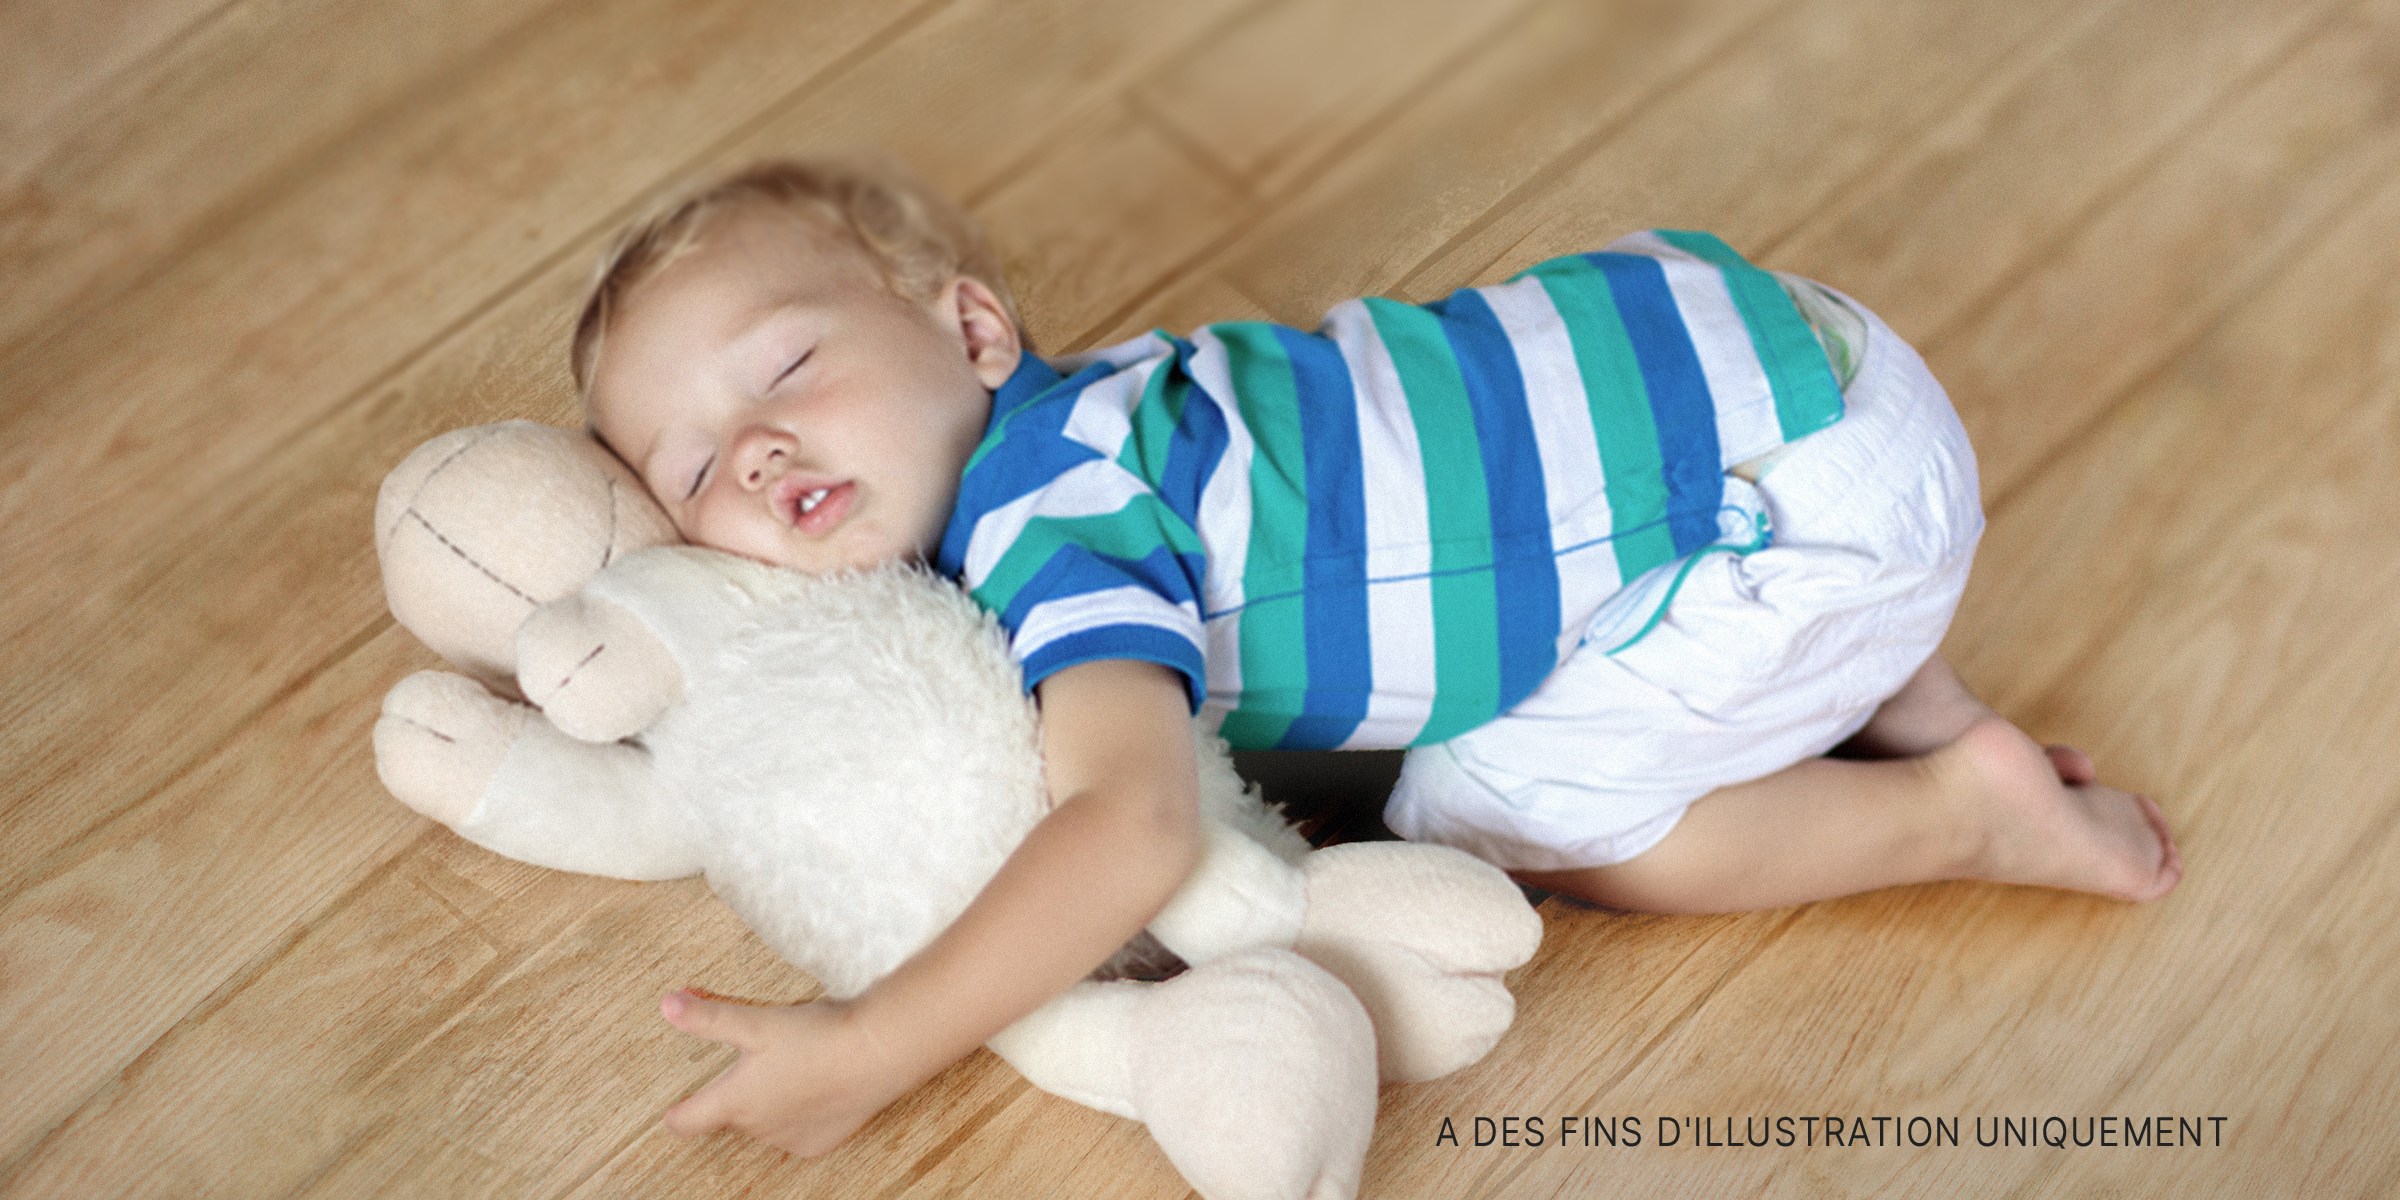 Un enfant sur le sol avec une peluche | Source : Shutterstock